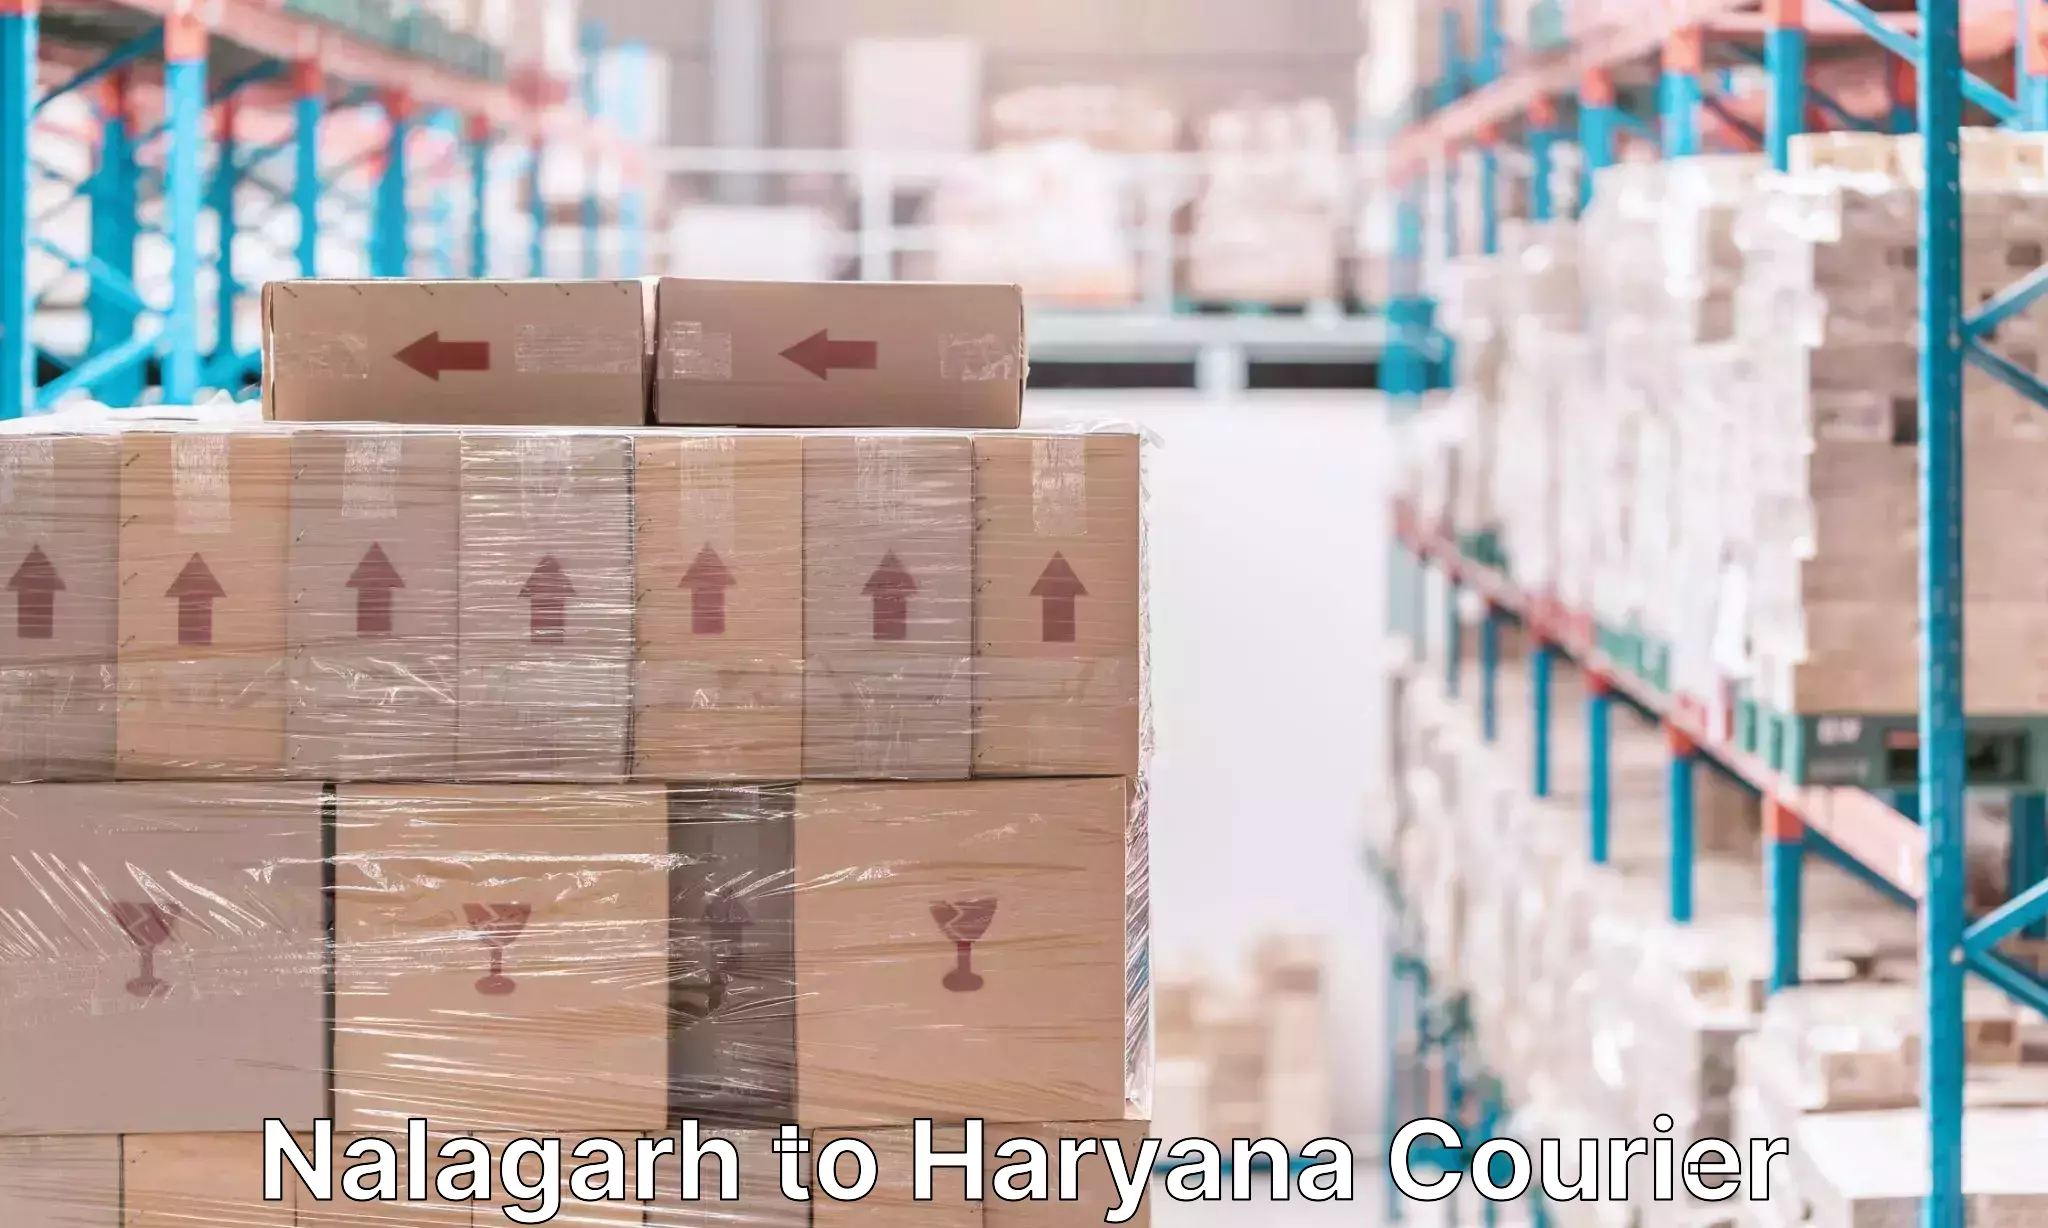 Baggage transport scheduler Nalagarh to Haryana